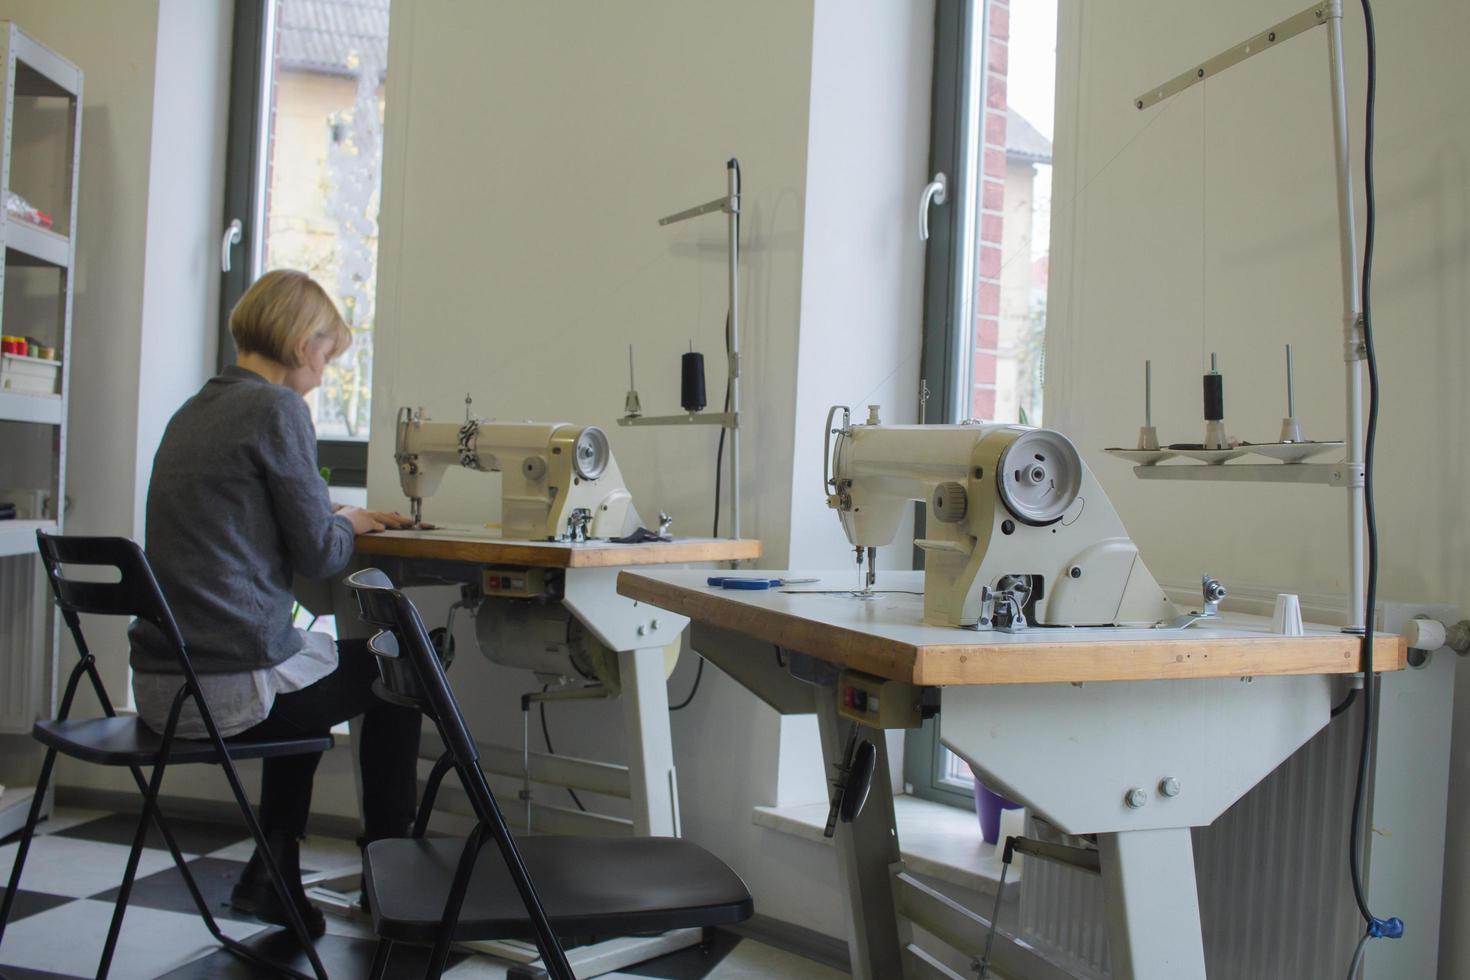 costurera en el trabajo sobre la mesa, sastre mujer trabaja en estudio con ropa foto